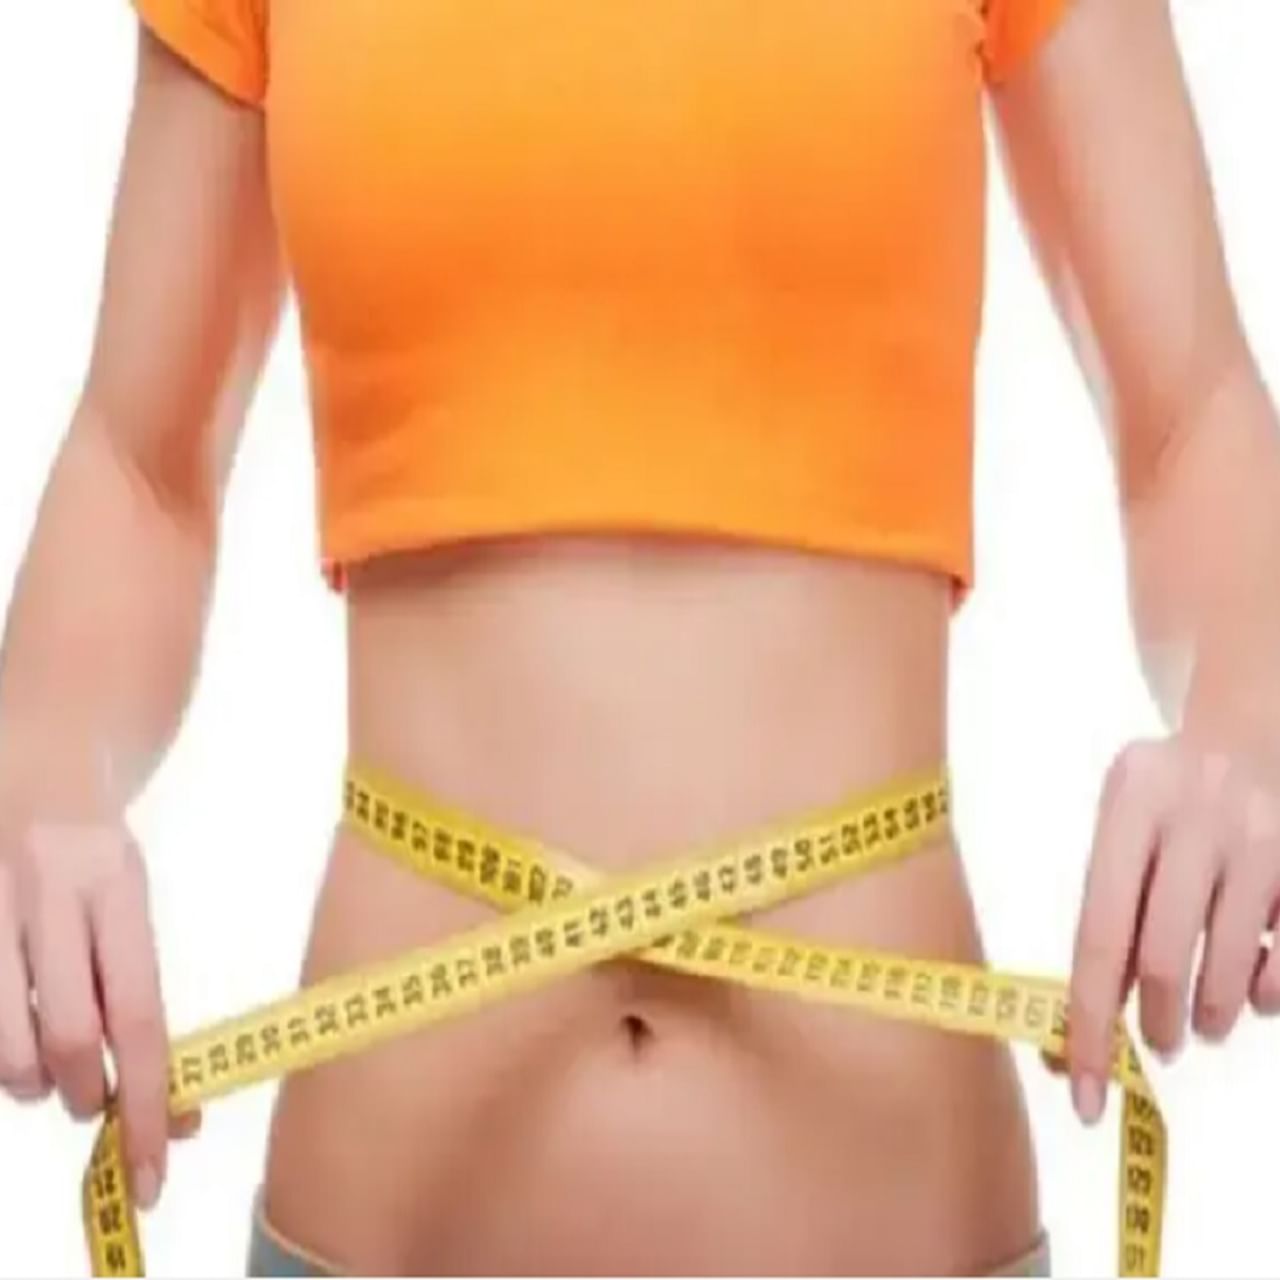 निरोगी राहण्यासाठी आपले वजन कमी आणि आपल्या BMI प्रमाणे असणे गरजेचे आहे. जर आपल्या शरीरातील चरबी वाढत राहिली आणि वजन सतत वाढत राहिले तर अनेक आजार आपल्याला होण्याची दाट शक्यता असते. यामुळे वजन कमी करणे खूप जास्त फायदेशीर आहे. विशेष म्हणजे सध्याच्या उन्हाळ्याच्या हंगामामध्ये काही फळांचा आपण आपल्या आहारामध्ये समावेश करूनही आपले वाढलेले वजन कमी करू शकतो. 